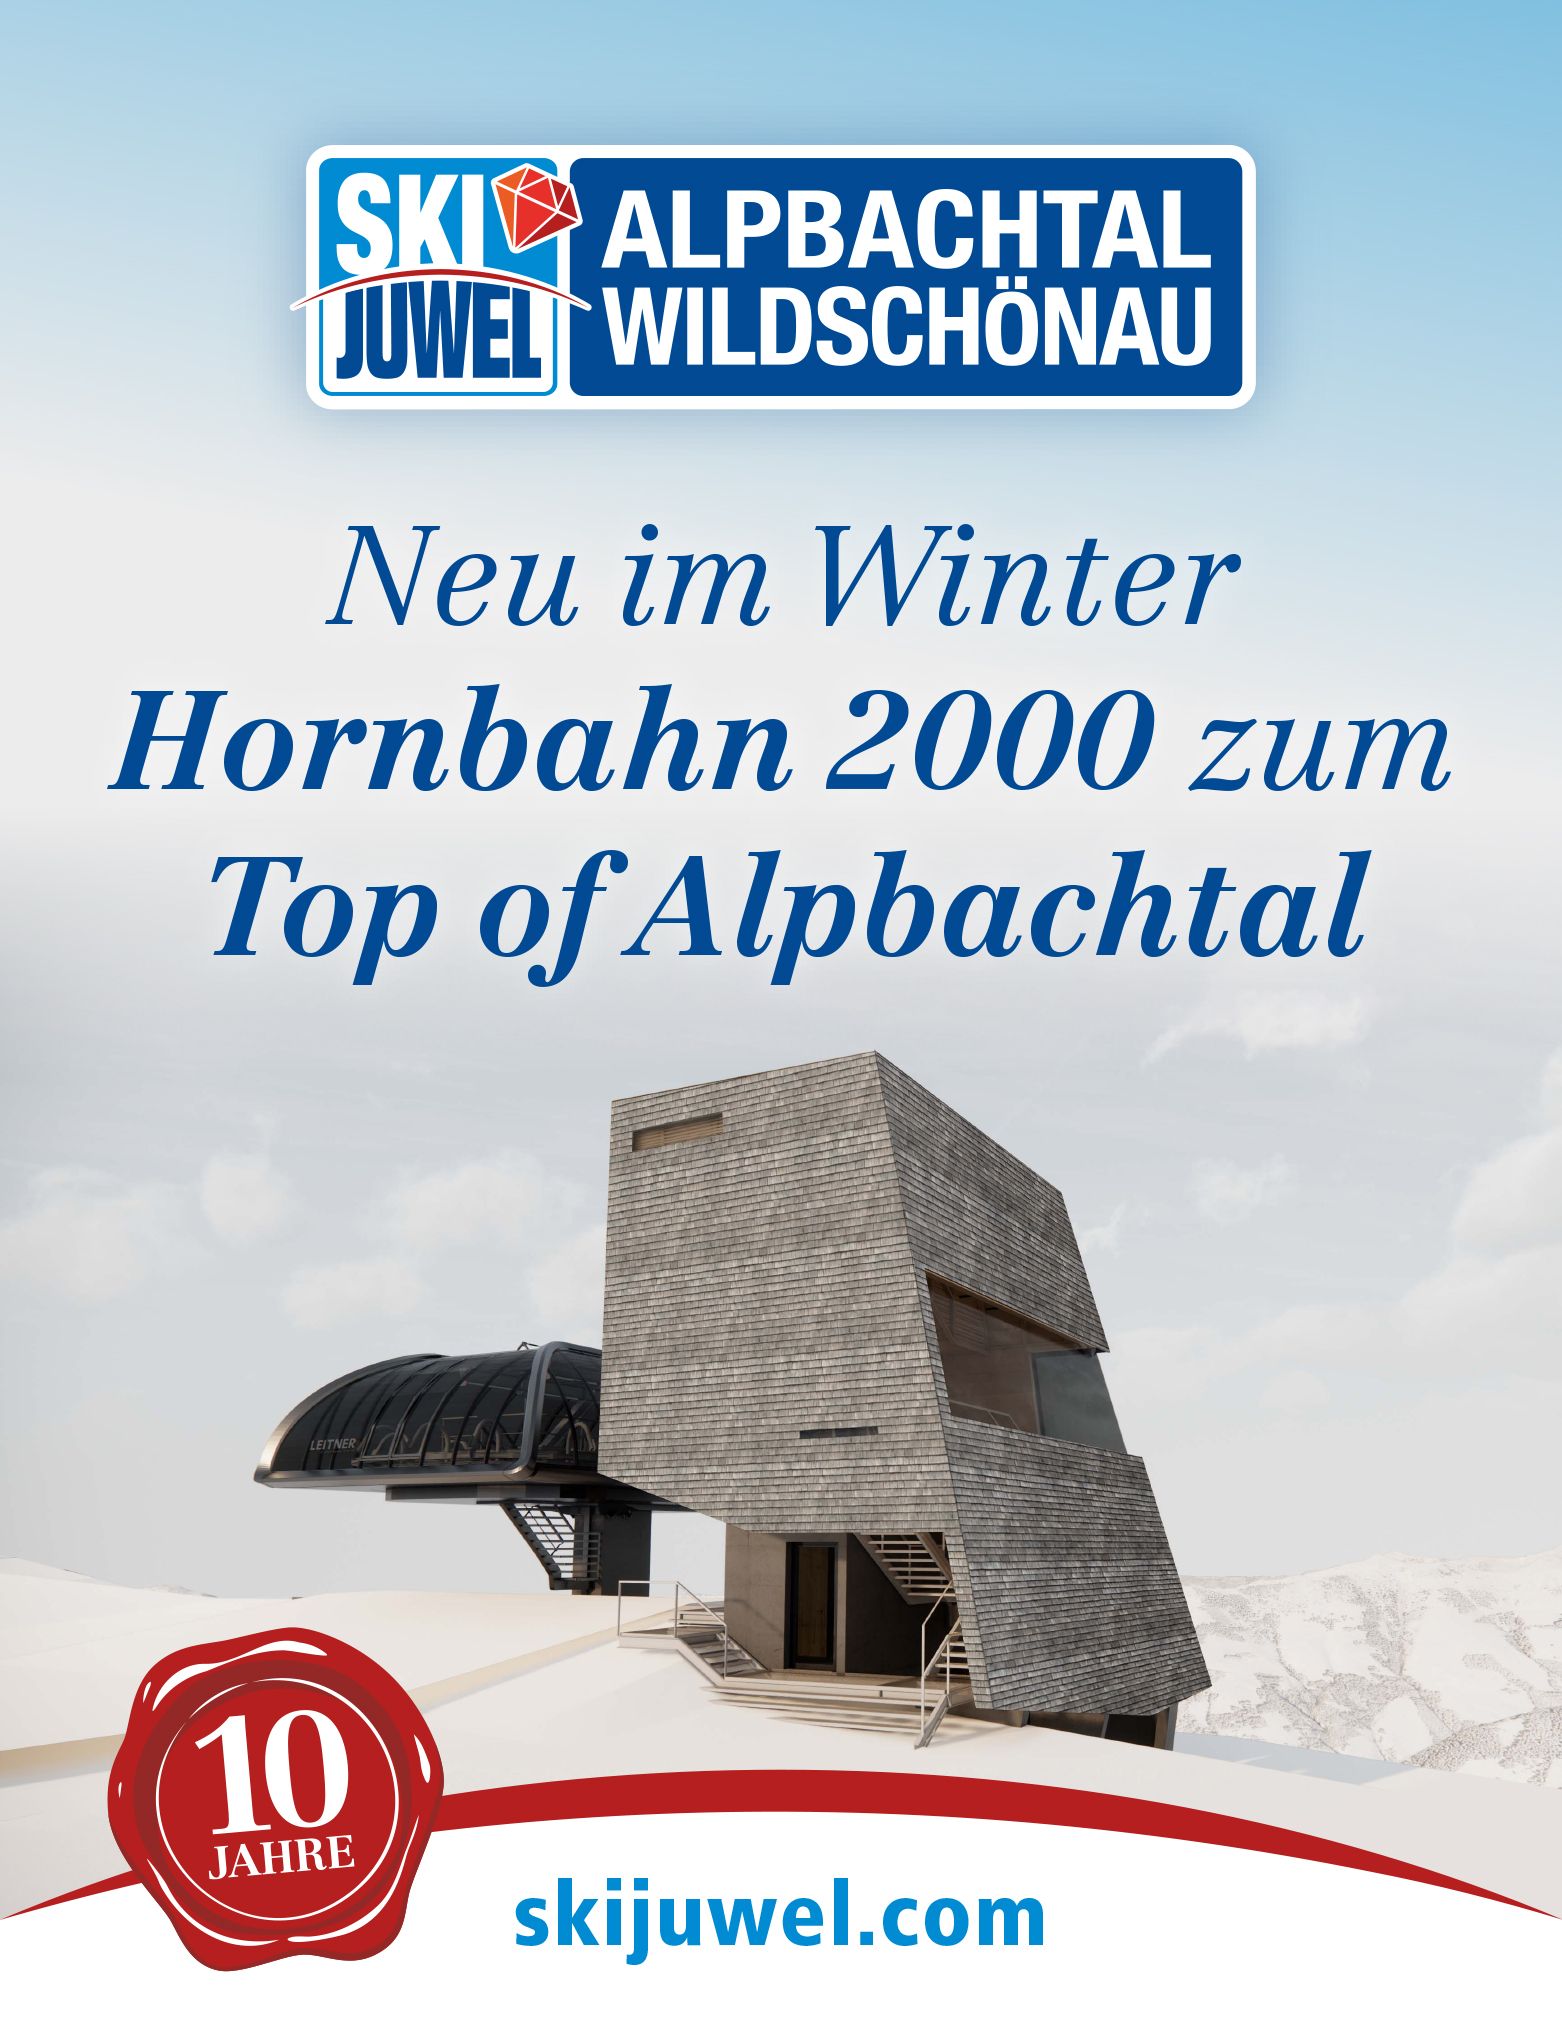 Neue Hornbahn 2000 & Top of Alpbachtal